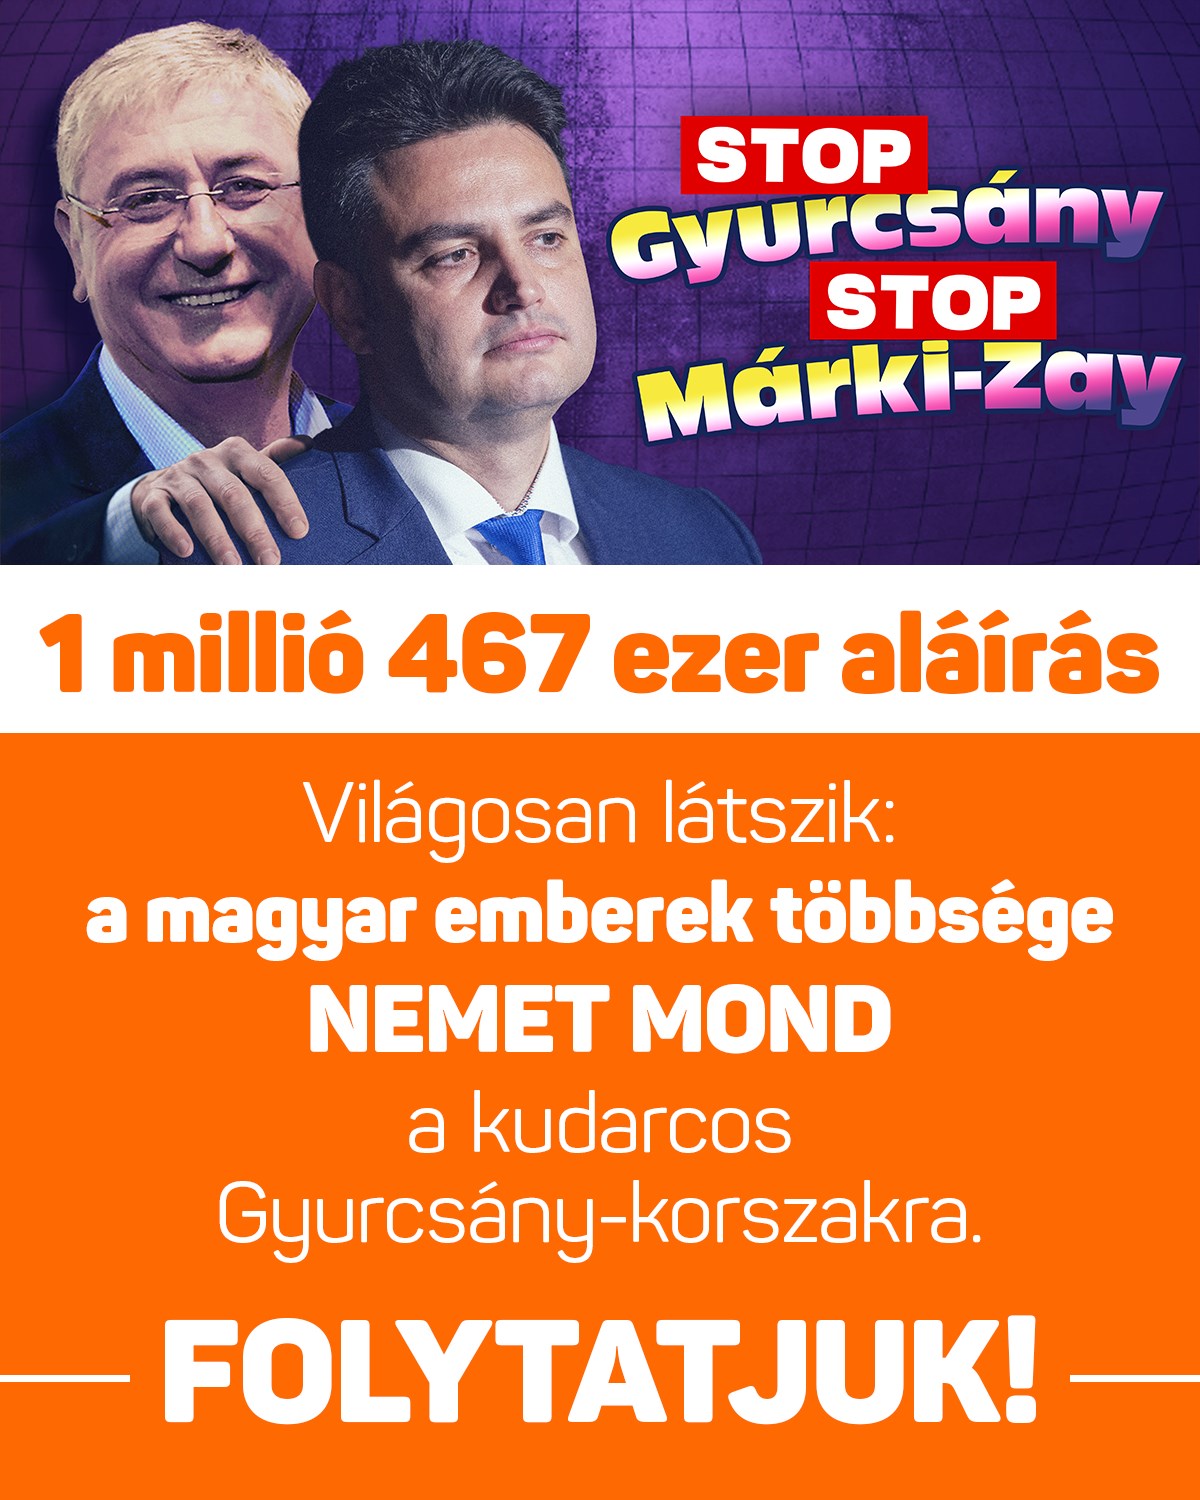 A Stop, Gyurcsány! Stop, Márki-Zay! petíció aláíróinak száma már meghaladta az 1 millió 467 ezret.